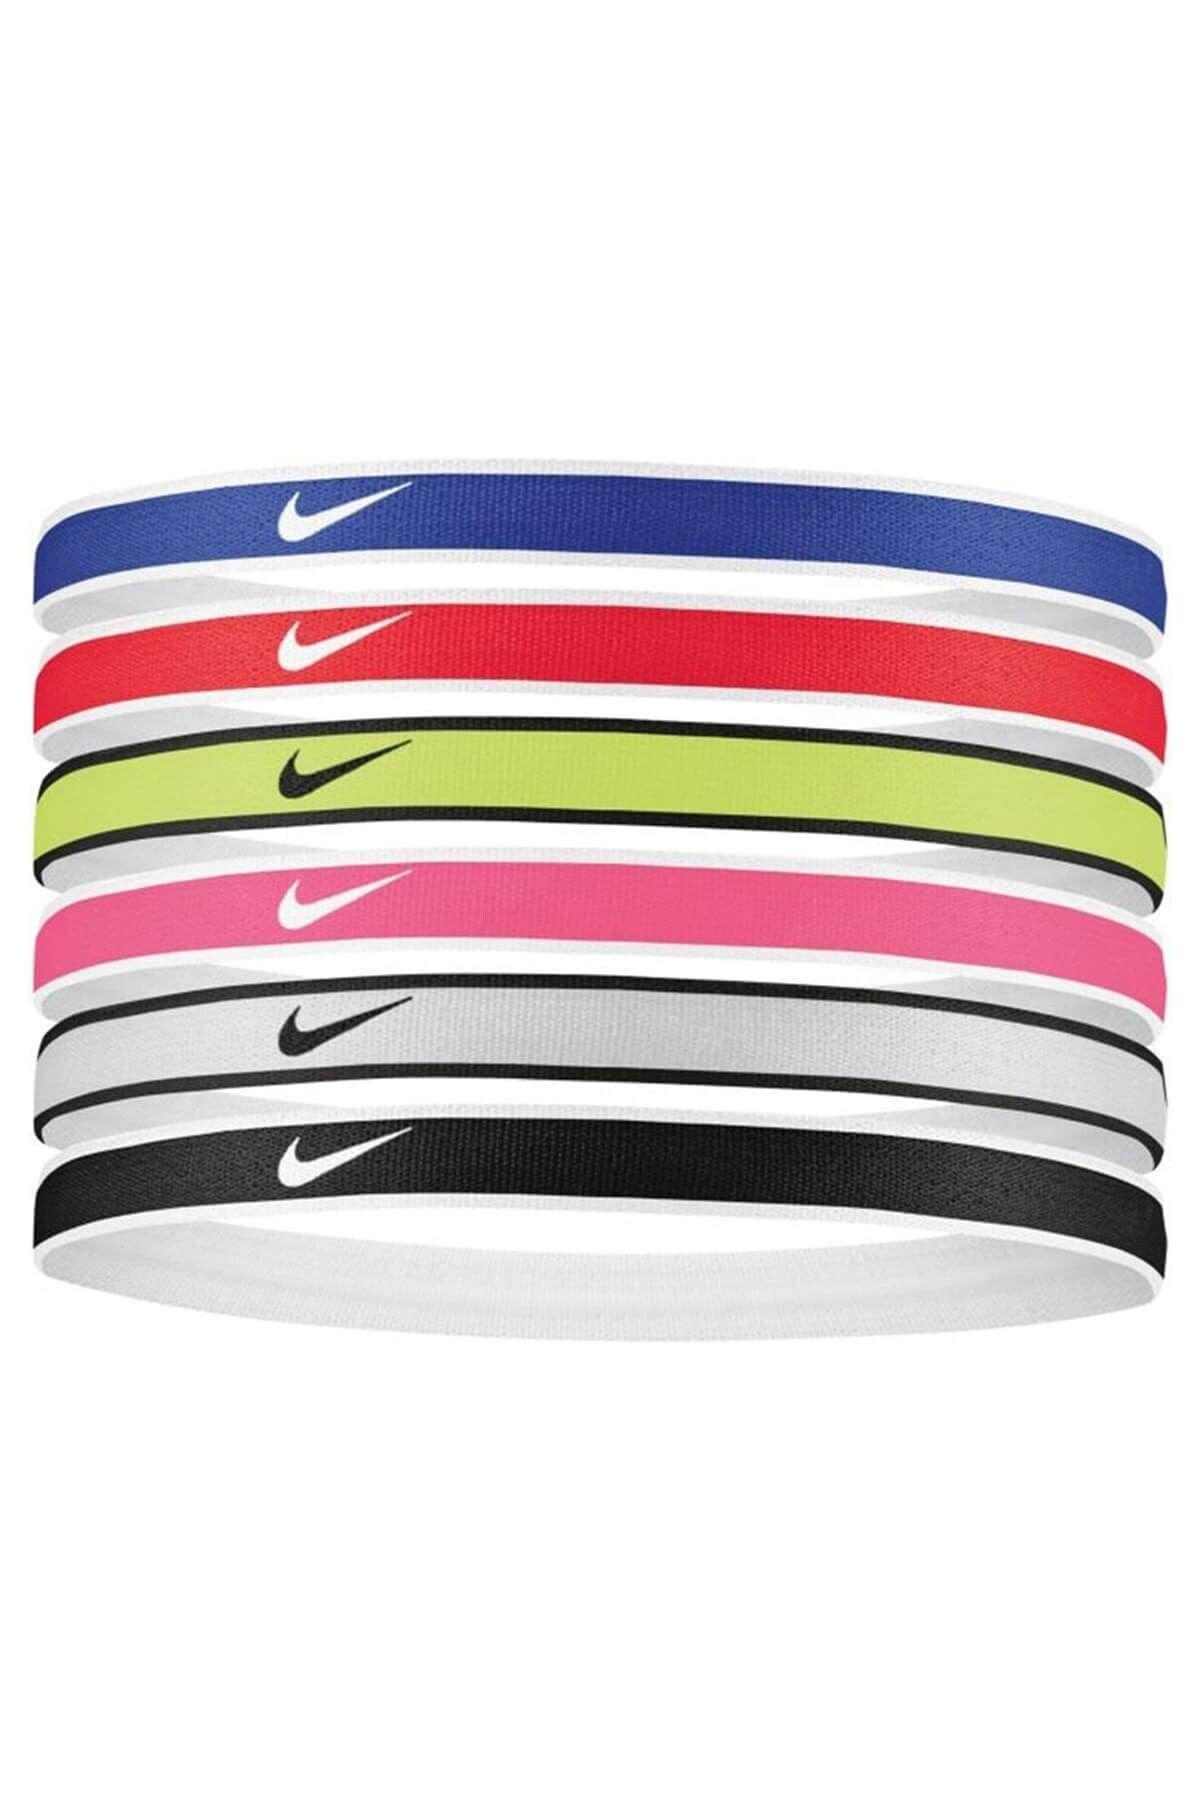 Nike Swoosh Sport Headbands 6 Pk Unisex Saç Bandı N.100.2021.655.os-kırmızı